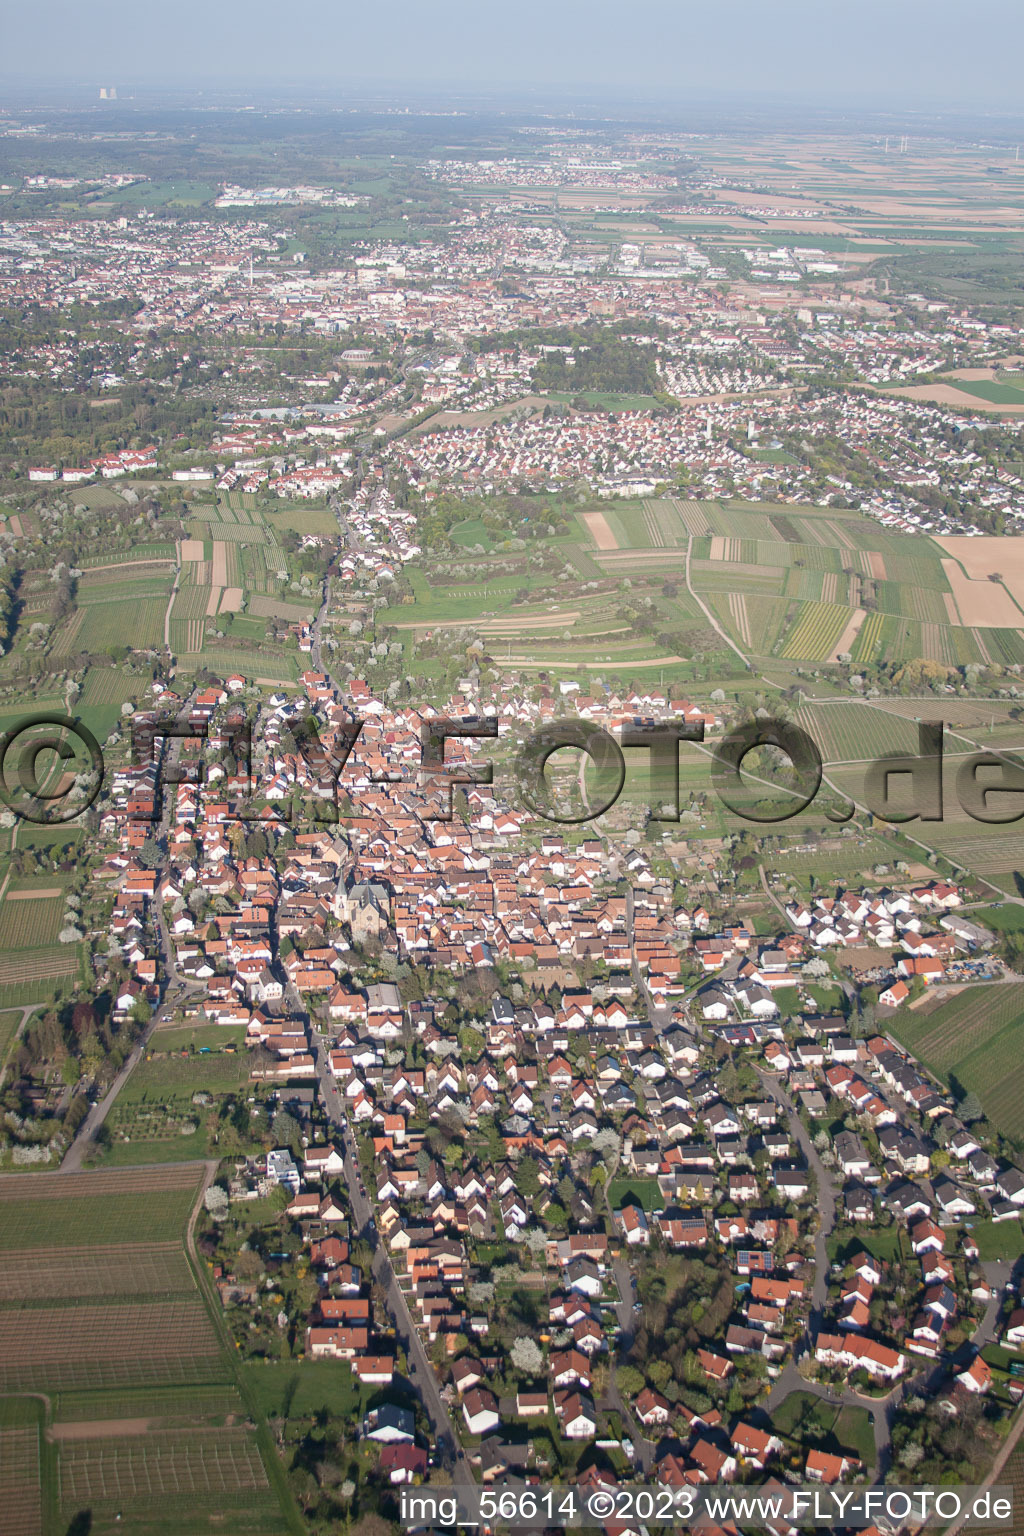 Bird's eye view of District Arzheim in Landau in der Pfalz in the state Rhineland-Palatinate, Germany